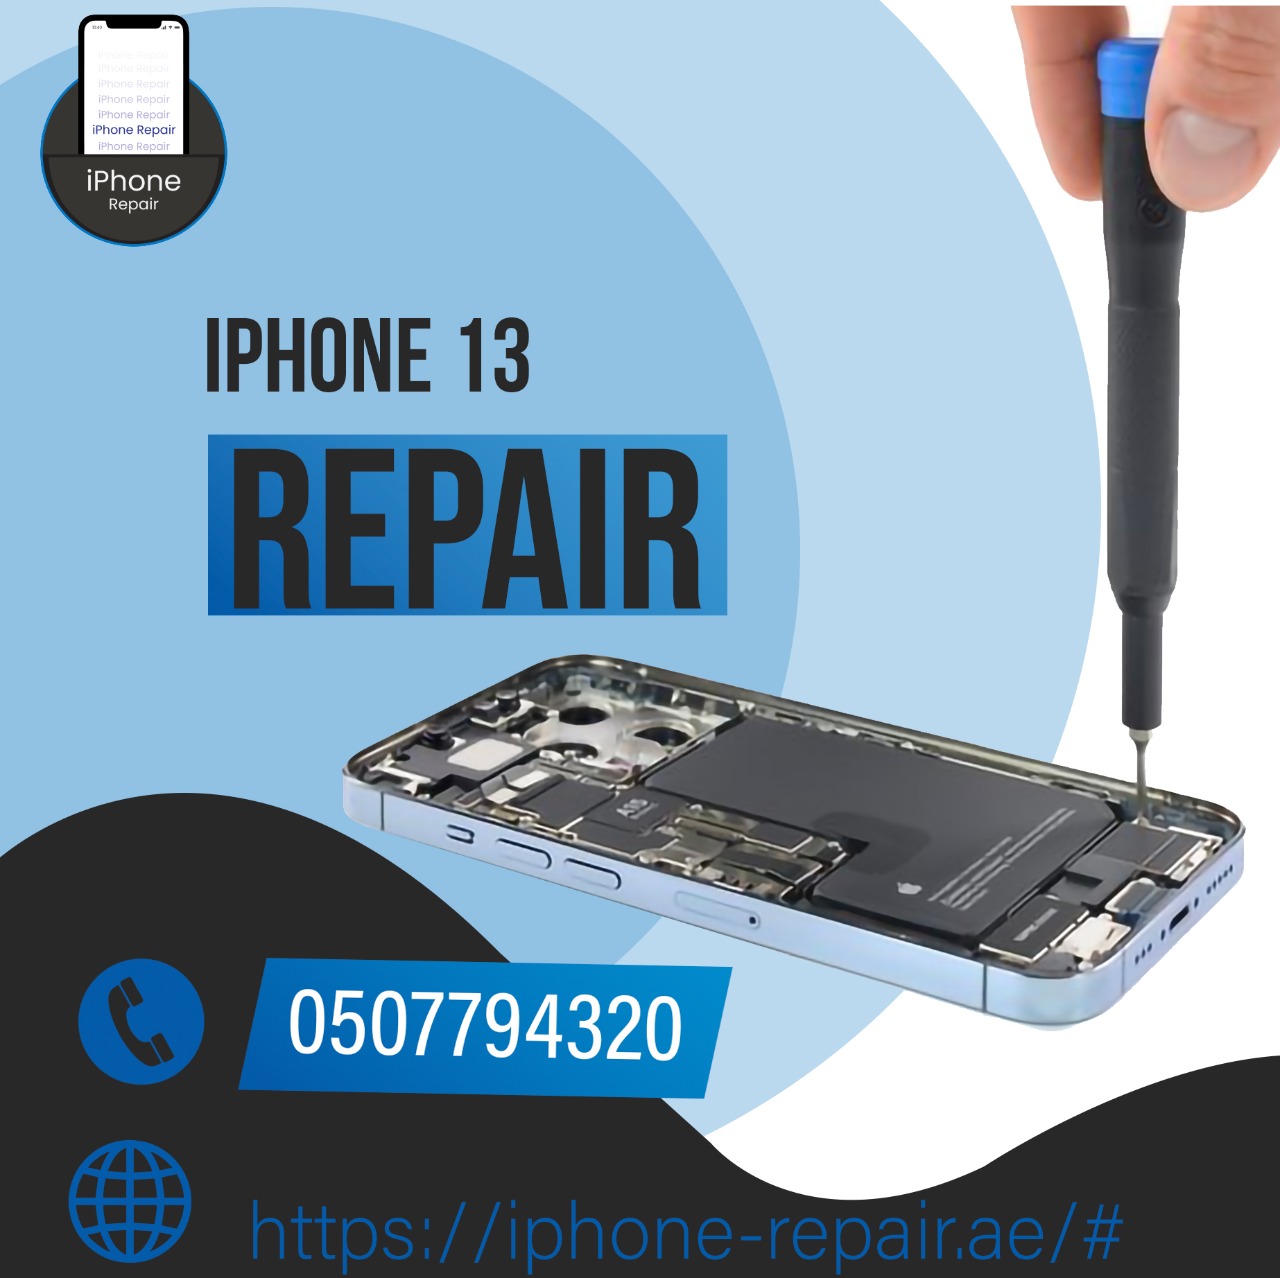 Iphone 13 repair